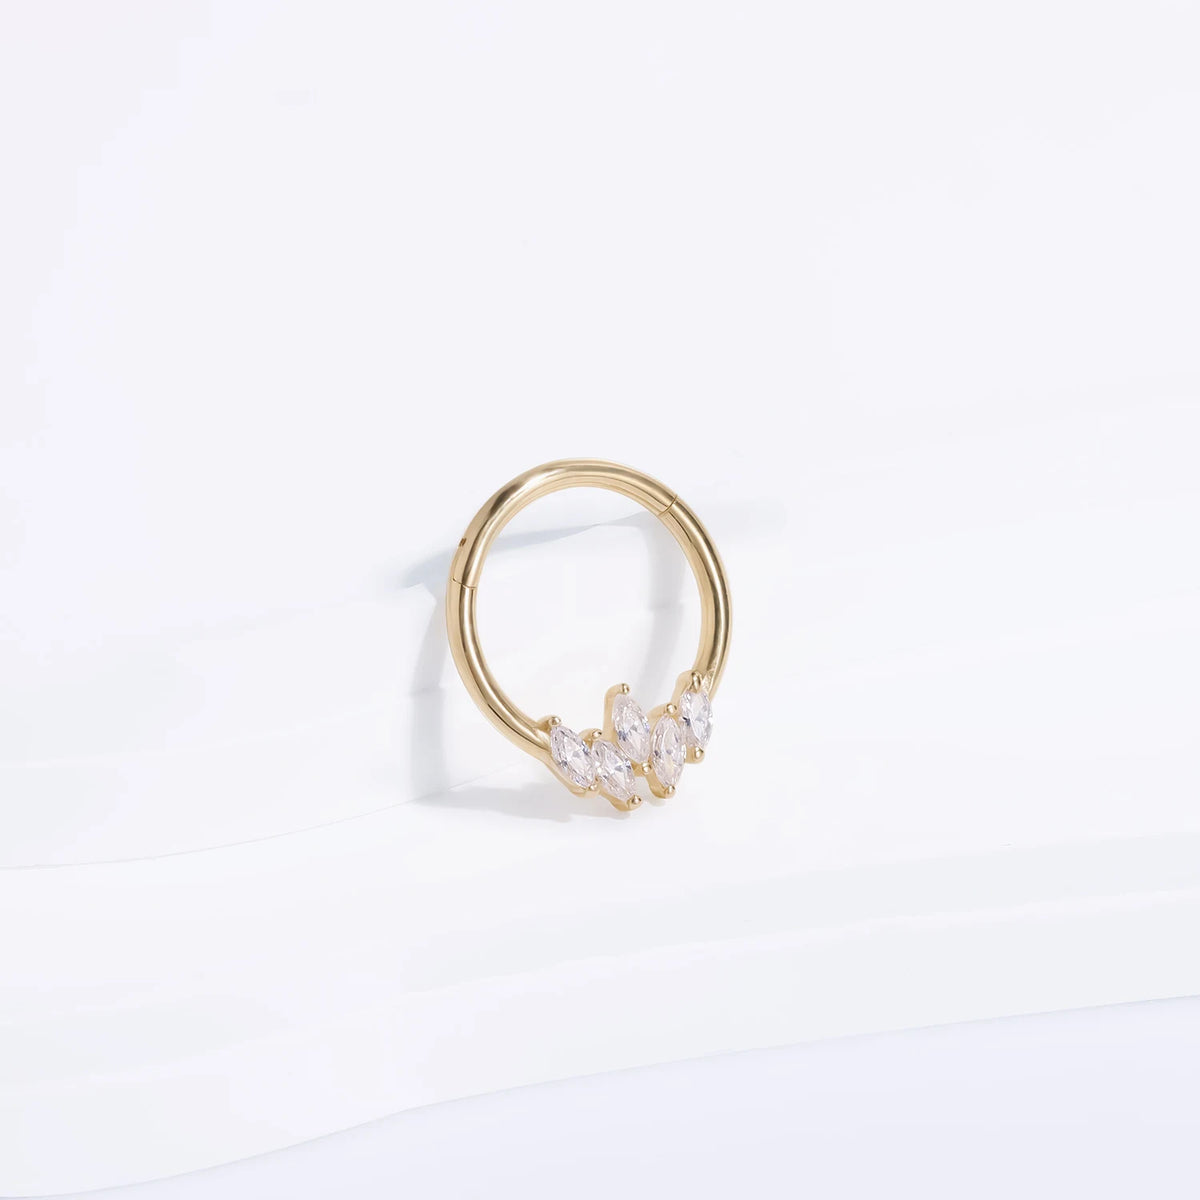 Anello setto in oro 14k con pietre CZ trasparenti anello clicker con segmento incernierato in oro massiccio anello al naso 16G